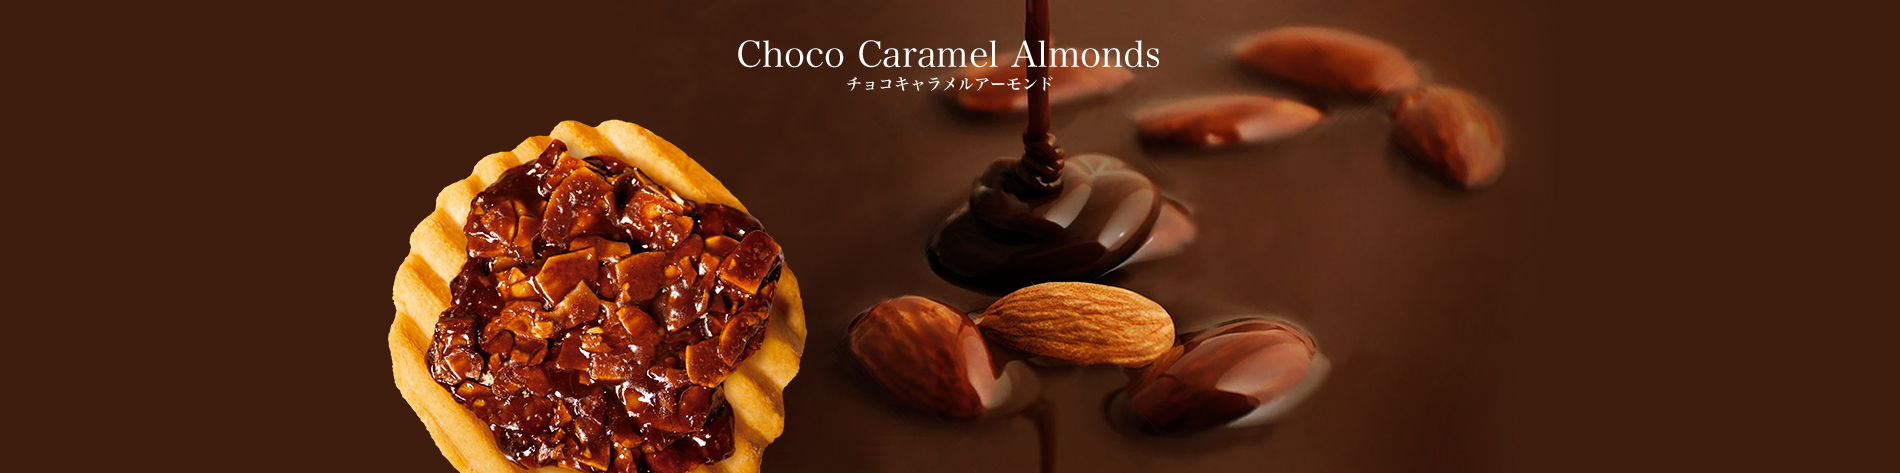 Choco Caramel Almonds  チョコキャラメルアーモンド